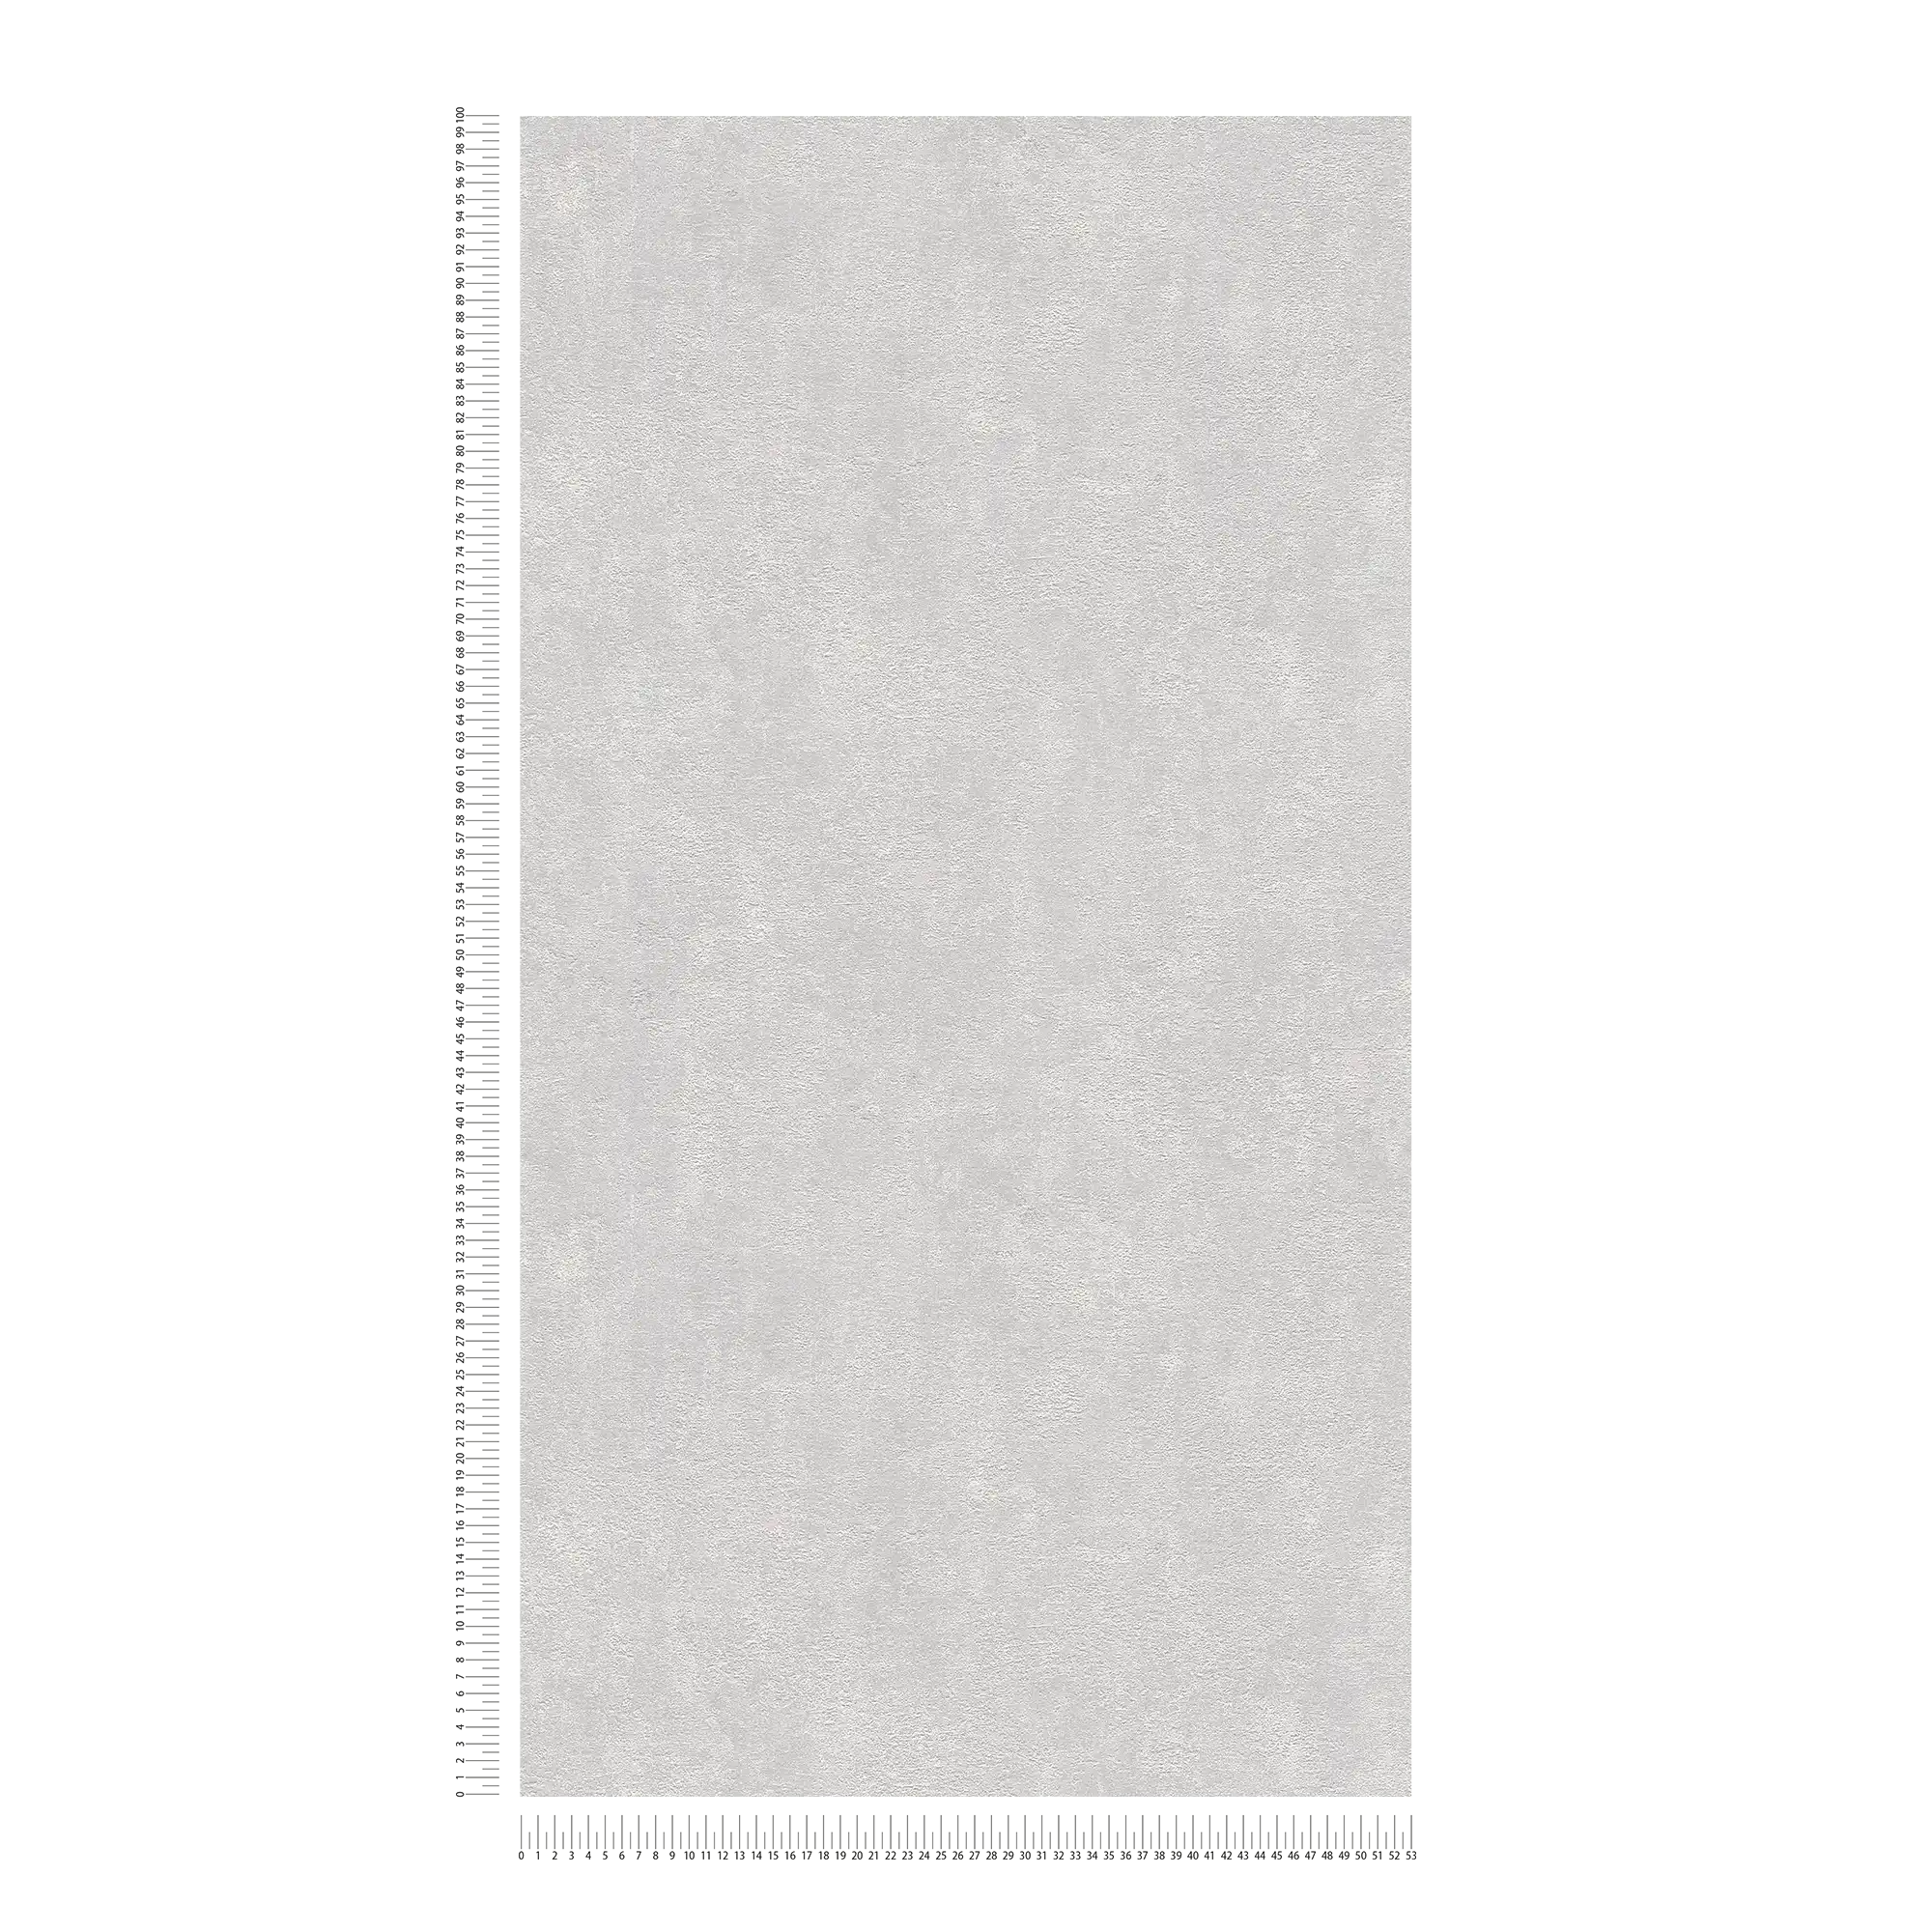             Papier peint plâtre structuré, uni & satiné - gris clair
        